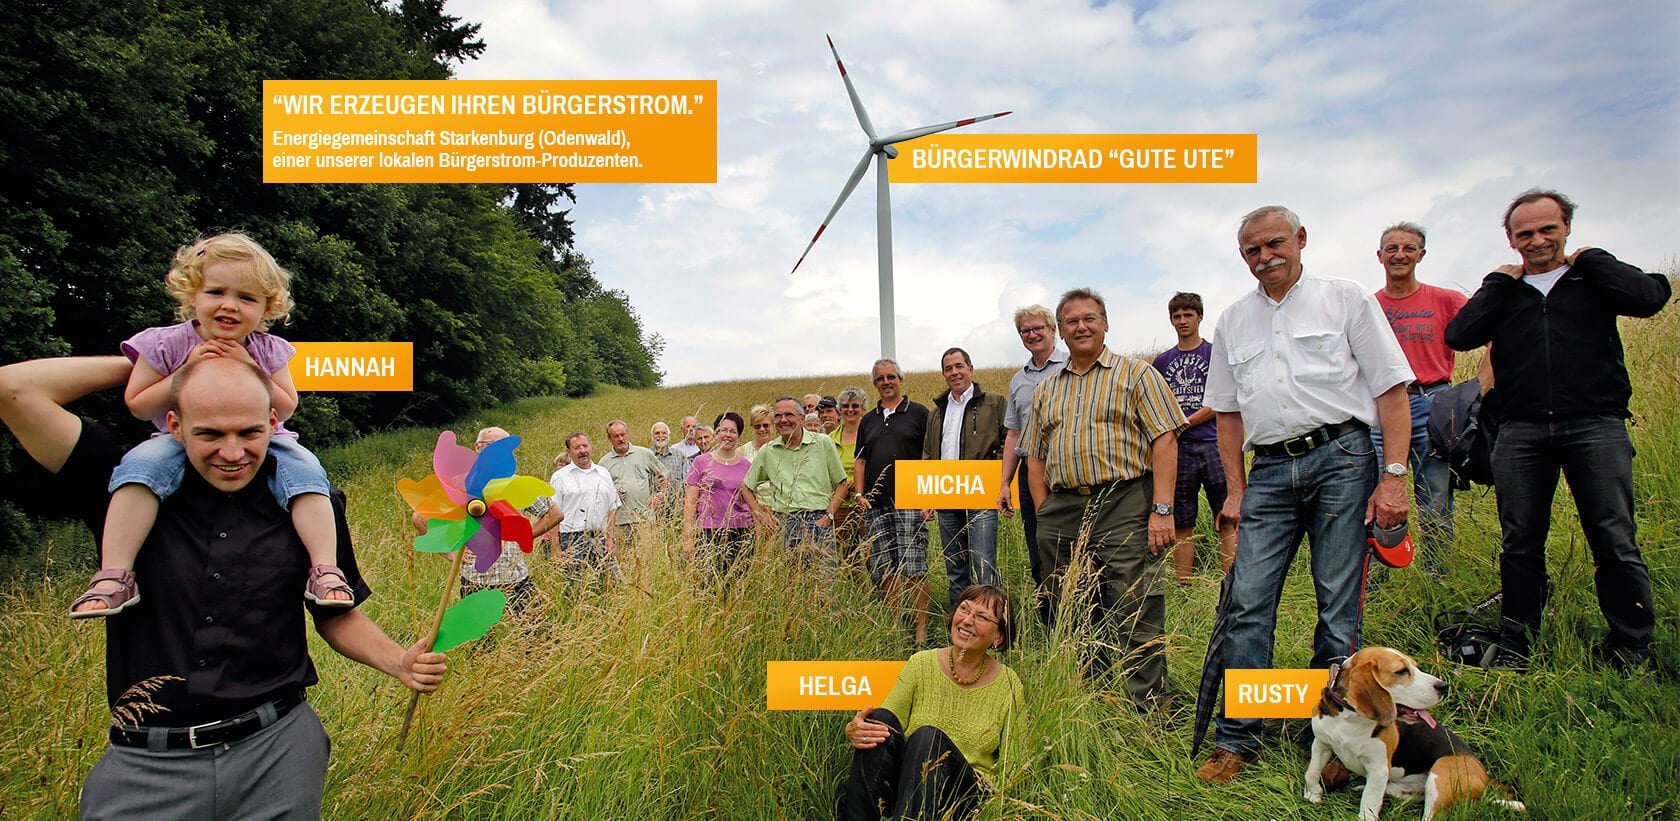 Energiegemeinschaft Starkenburg (Odenwald) vor Bürger Windrad Gute Ute